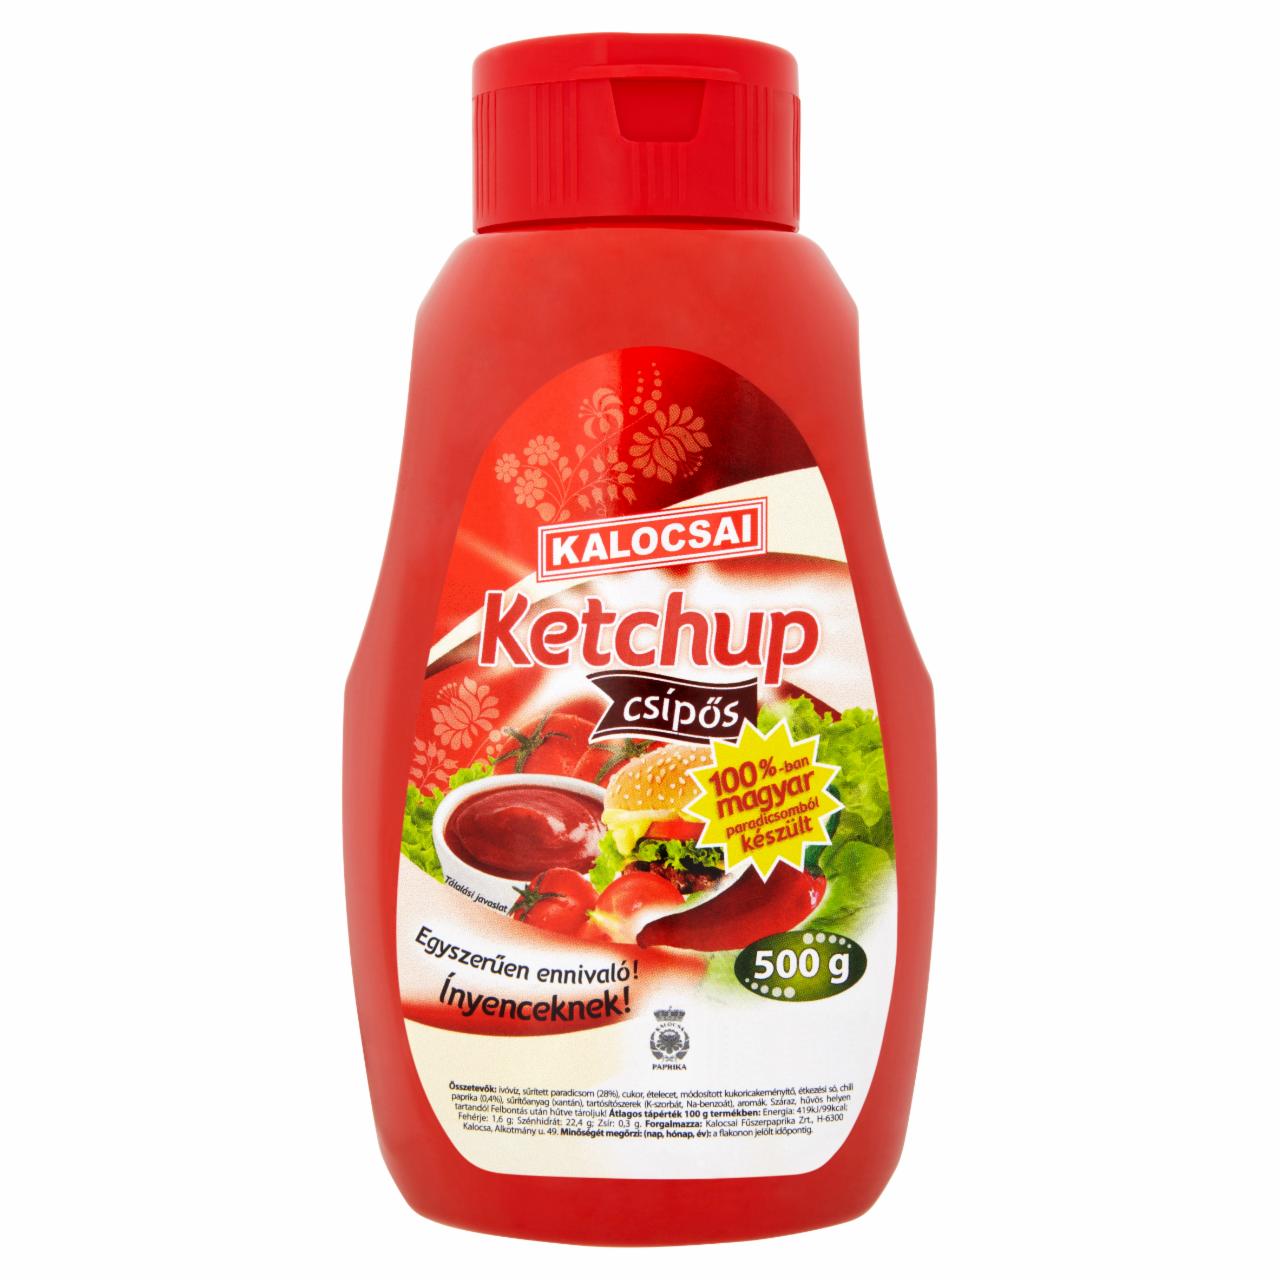 Képek - Kalocsai csípős ketchup 500 g